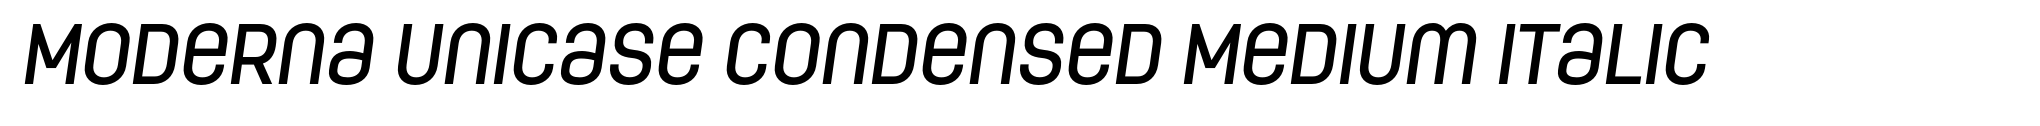 Moderna Unicase Condensed Medium Italic image